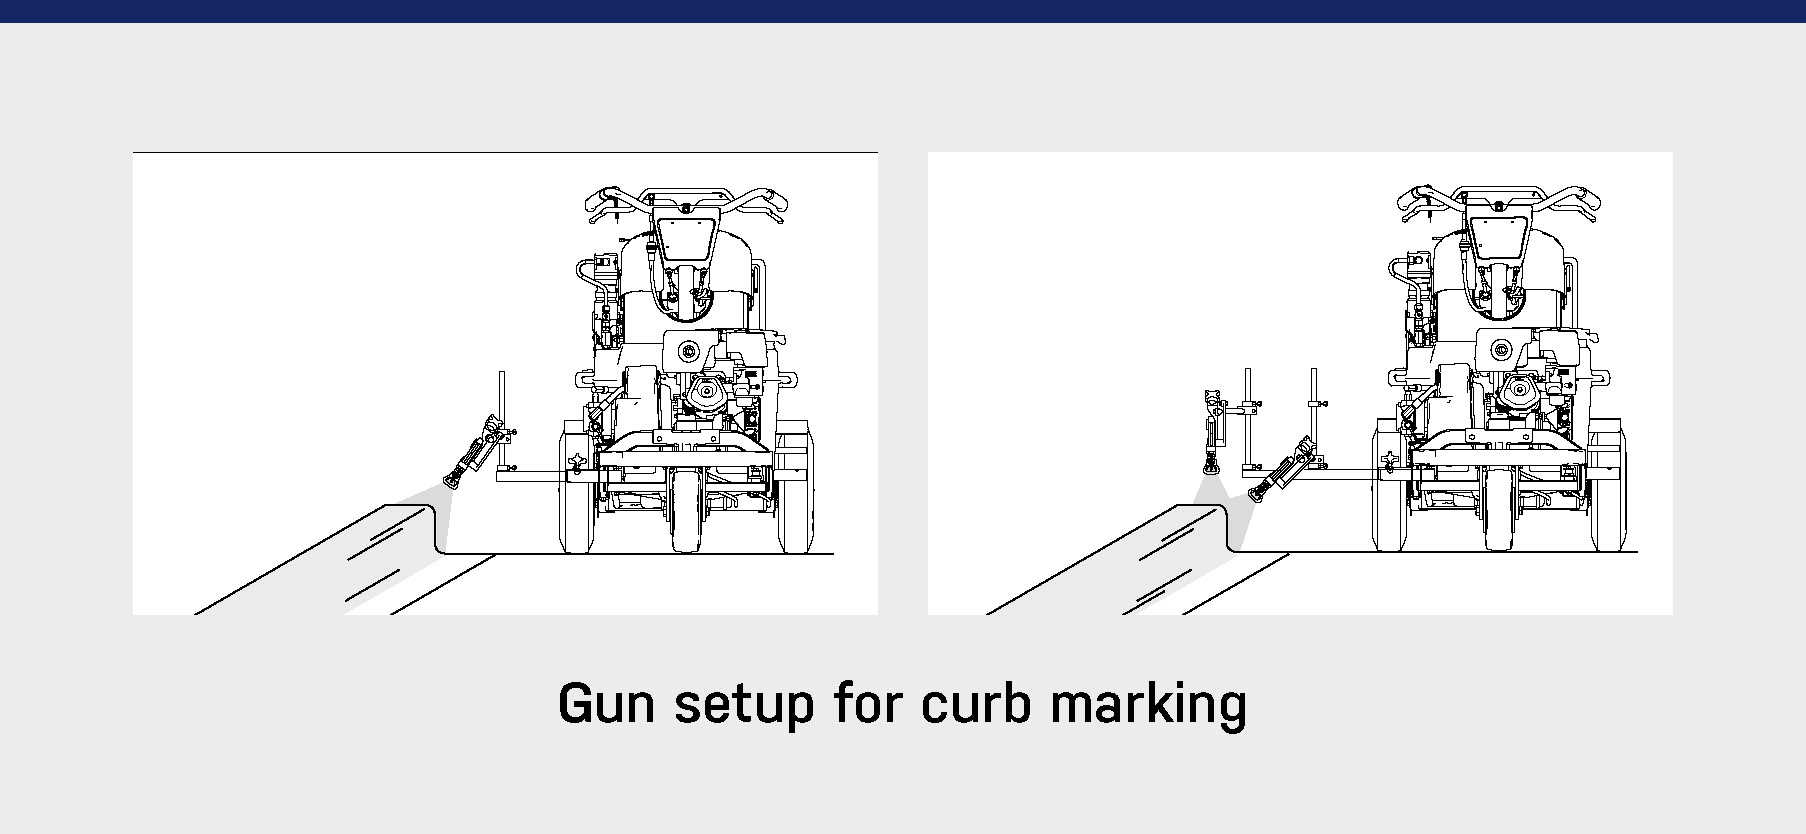 Gun setup for curb marking